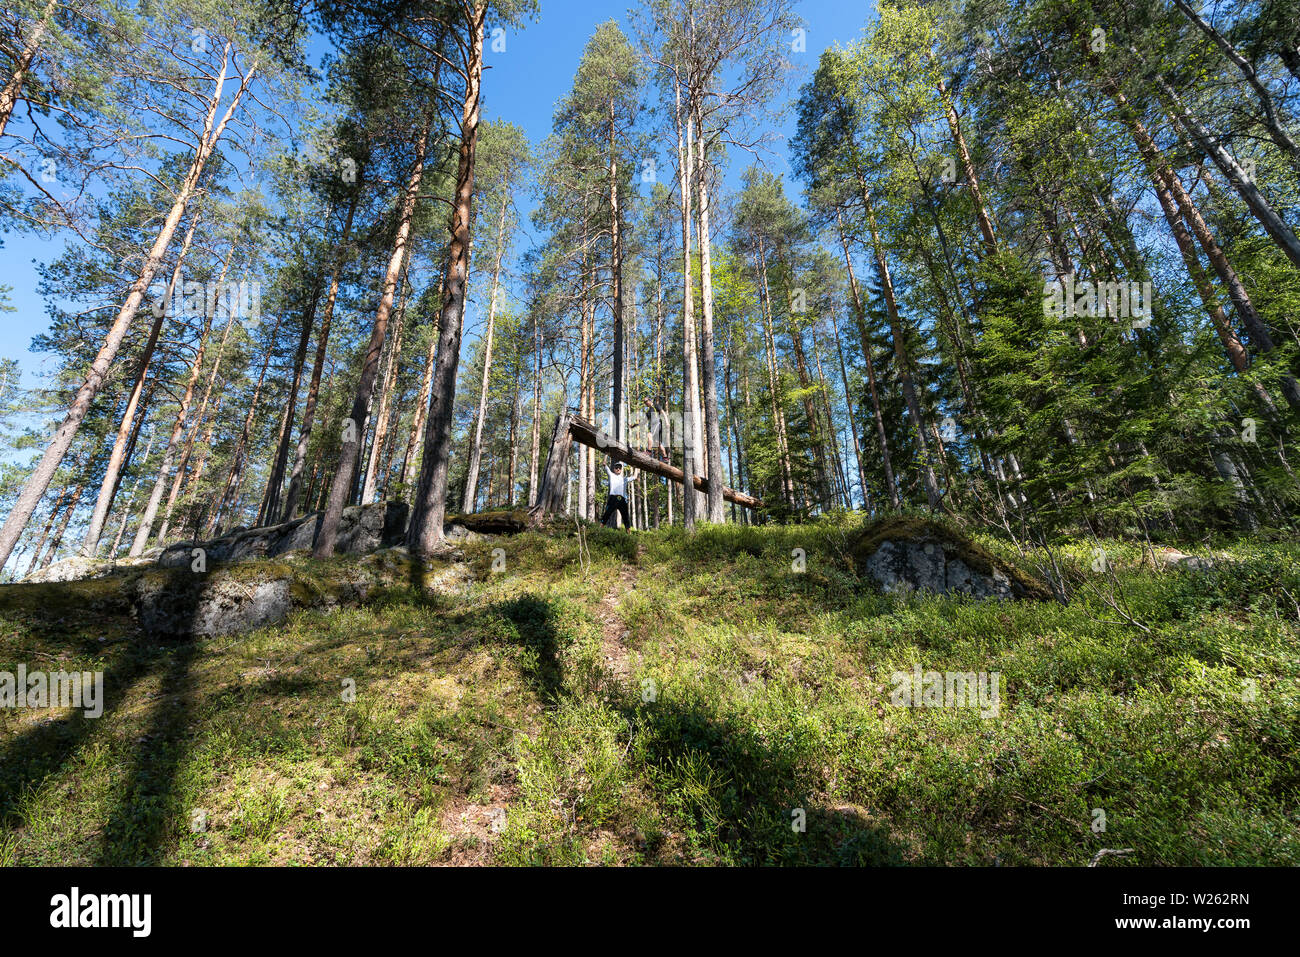 Day hiking at Kolovesi national park, Enonkoski, Finland Stock Photo